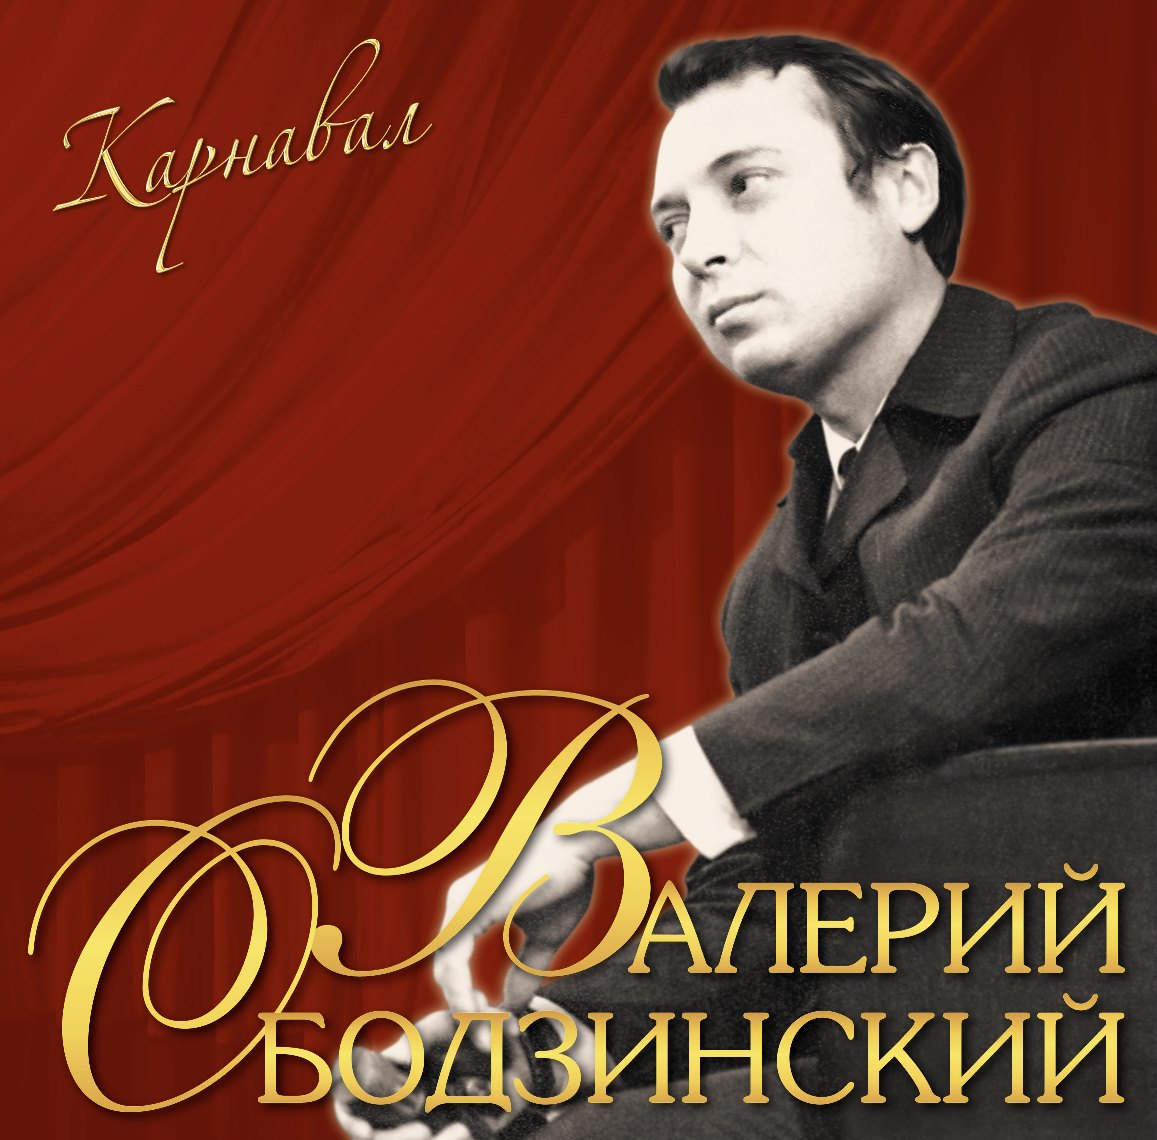 Валерий Ободзинский Карнавал (LP)